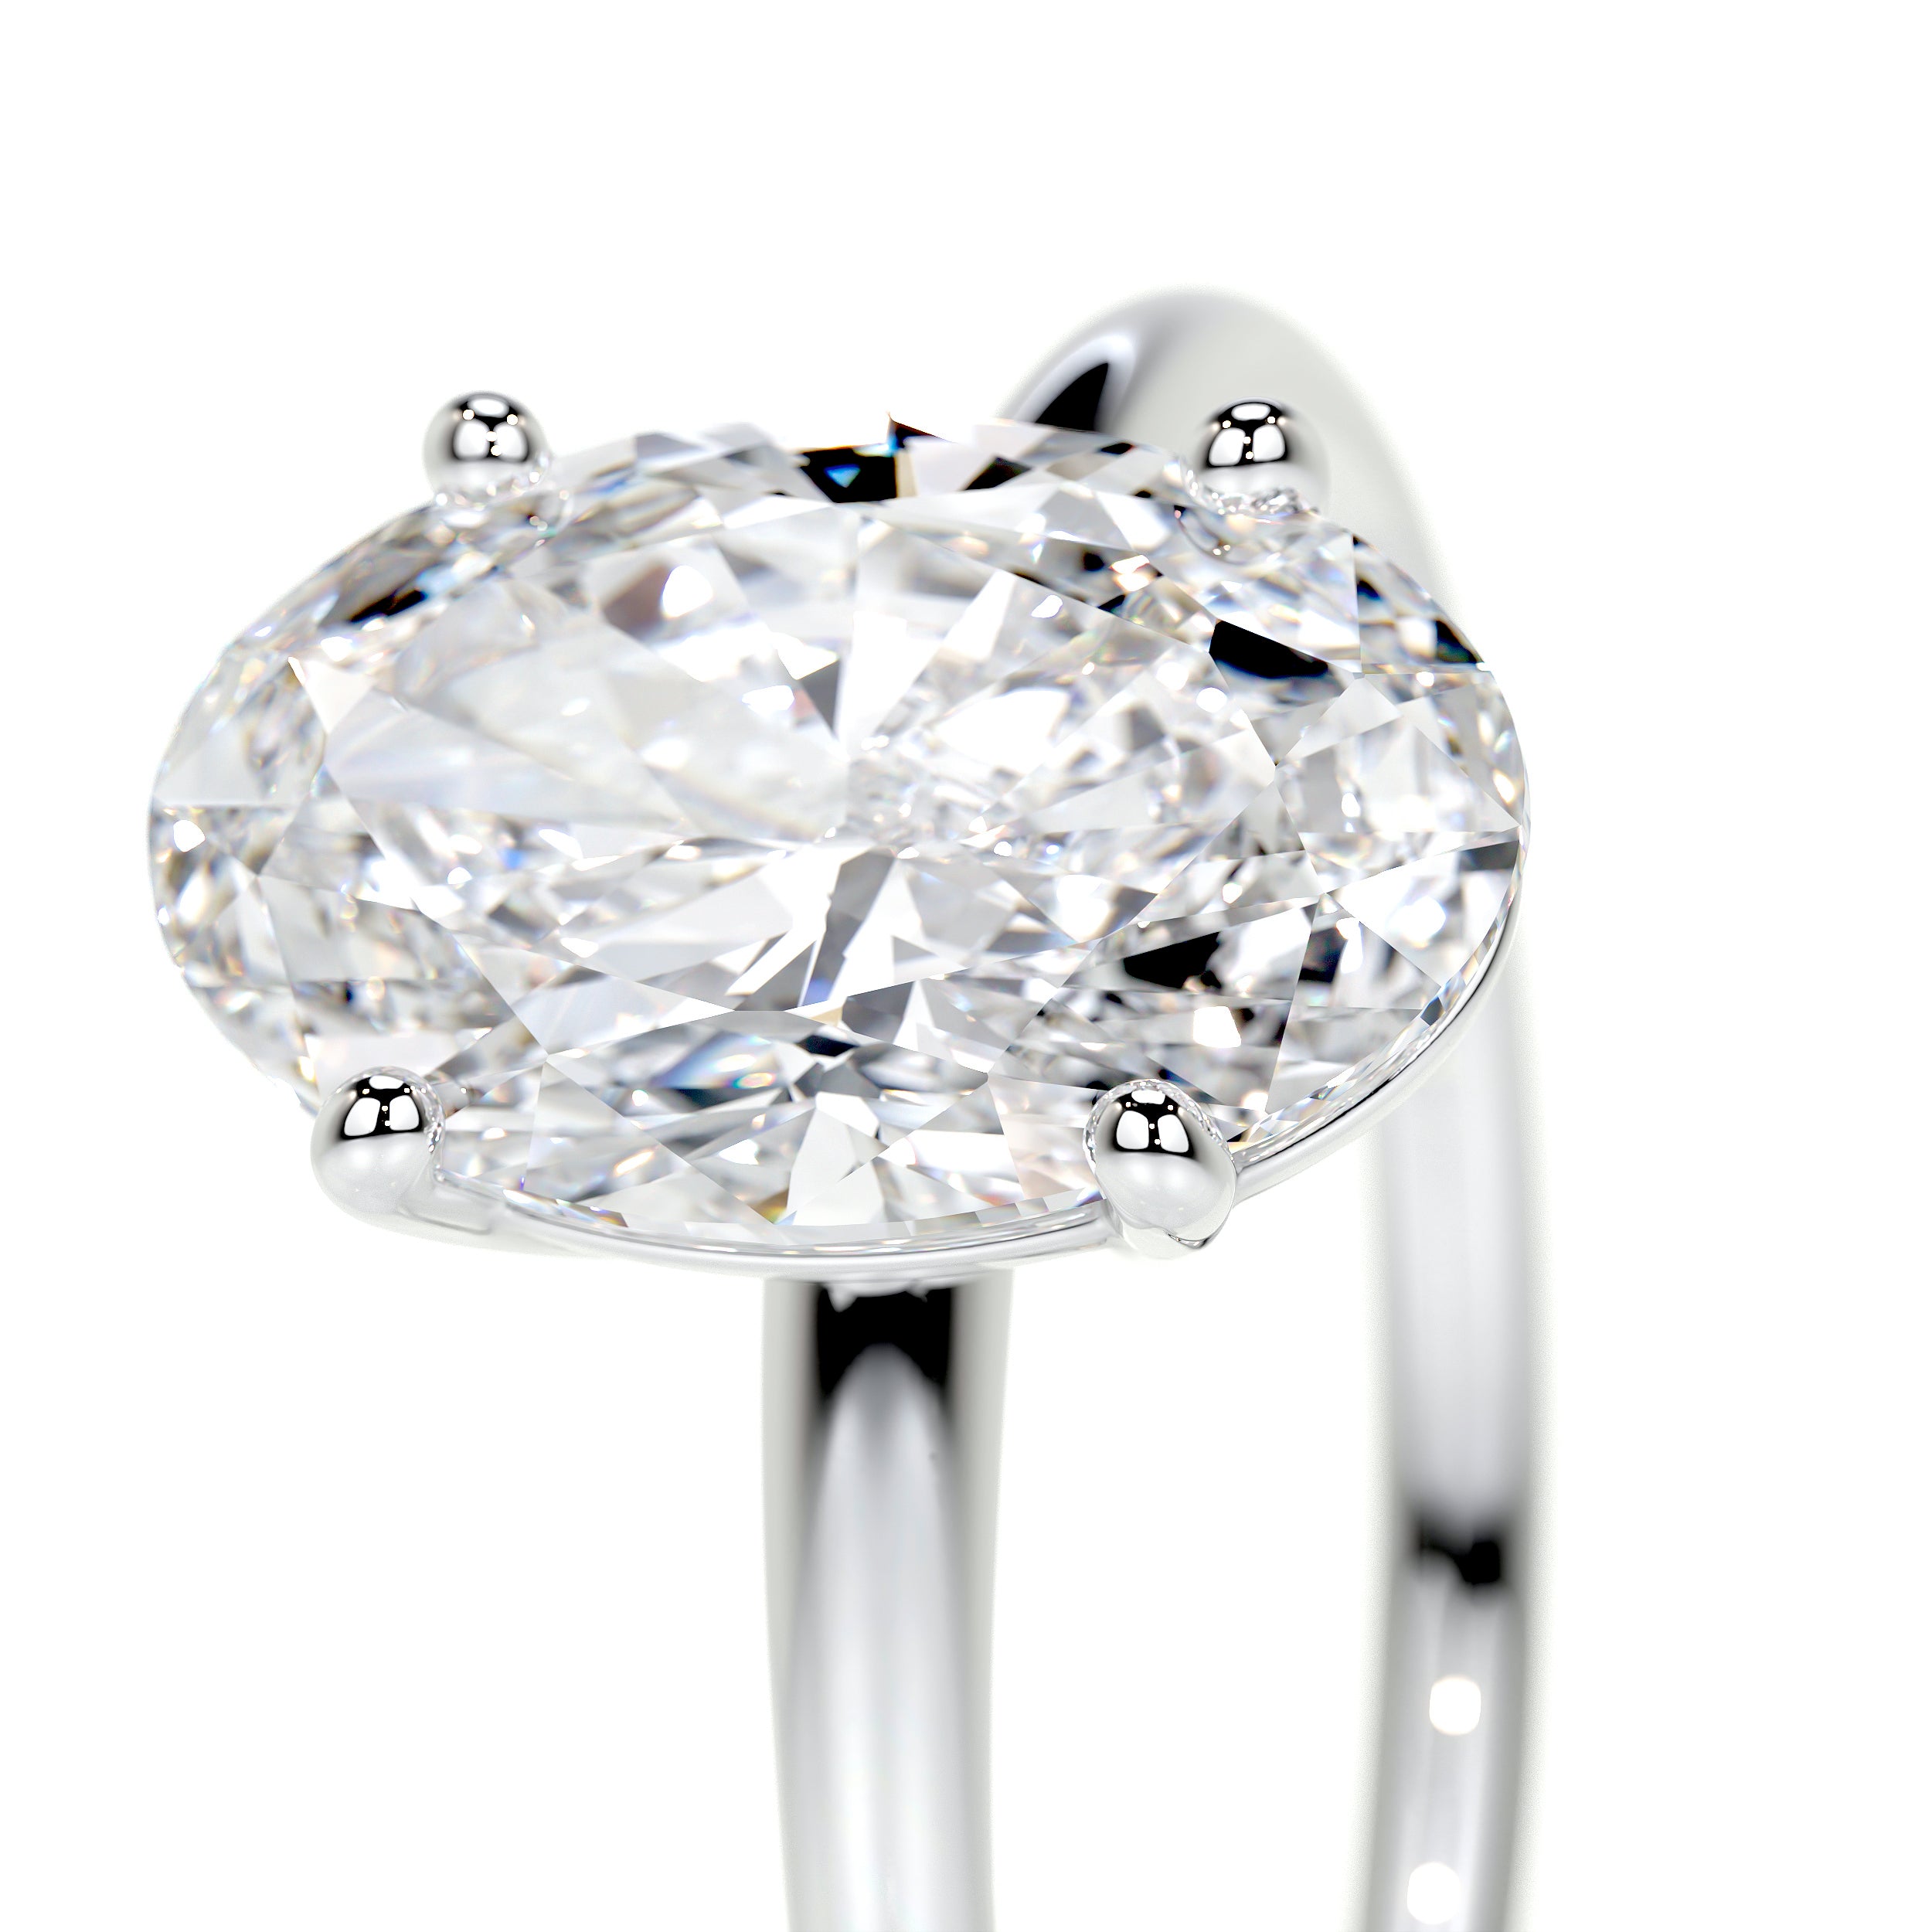 Adaline Lab Grown Diamond Ring -14K White Gold